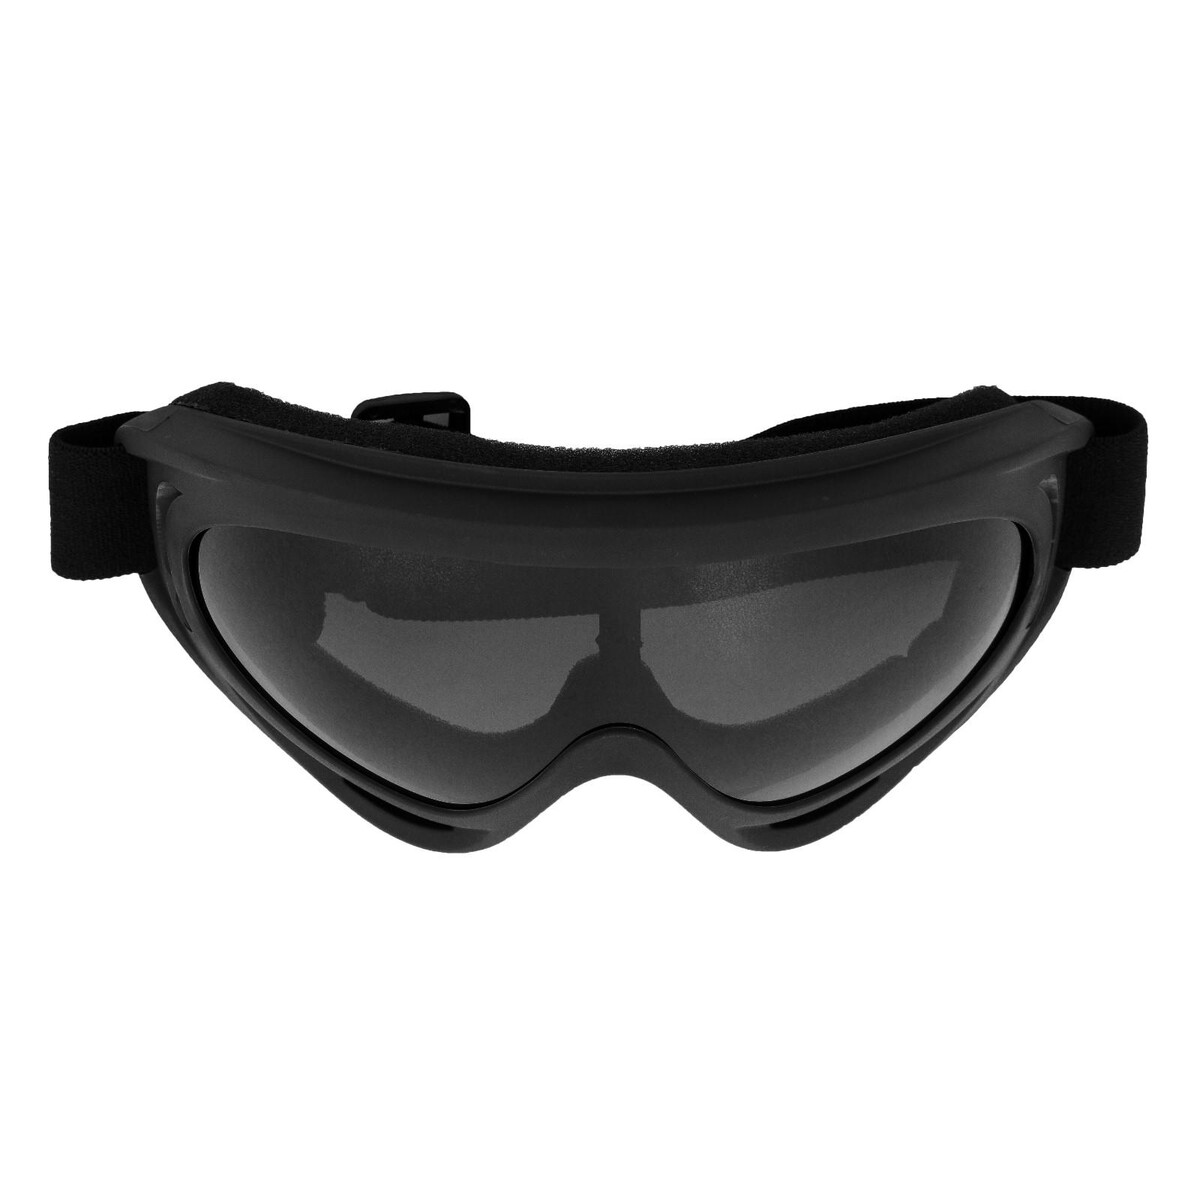 Очки для езды на мототехнике, стекло прозрачное серое, цвет черный очки для езды на мототехнике стекло прозрачное серое